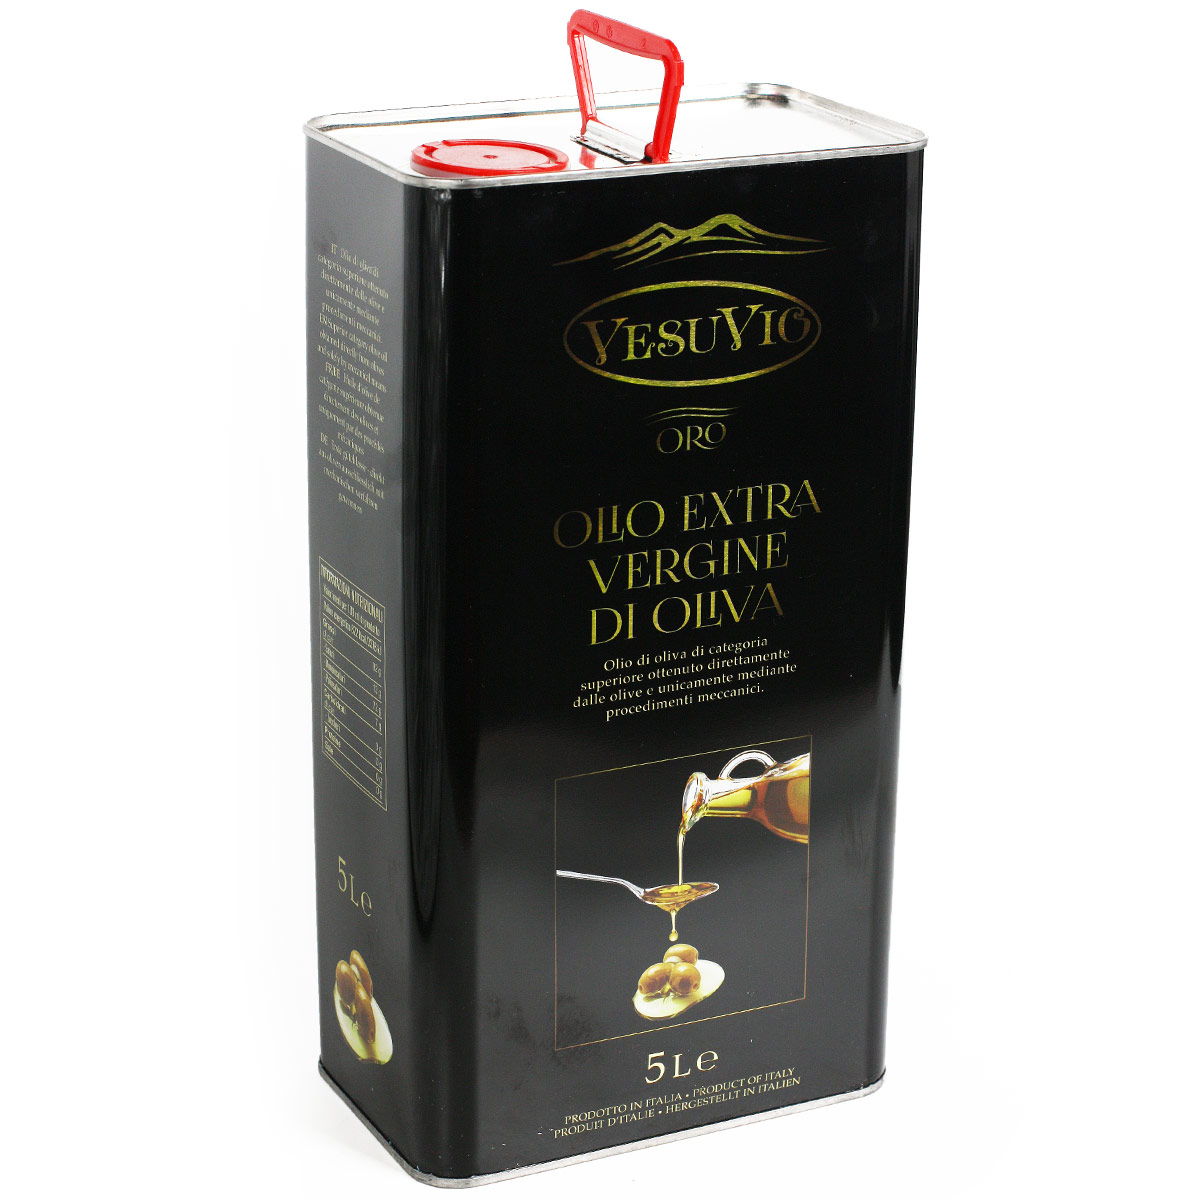 Vesuvio Olio Extra Vergine Di Oliva масло оливковое нерафинированное 5л